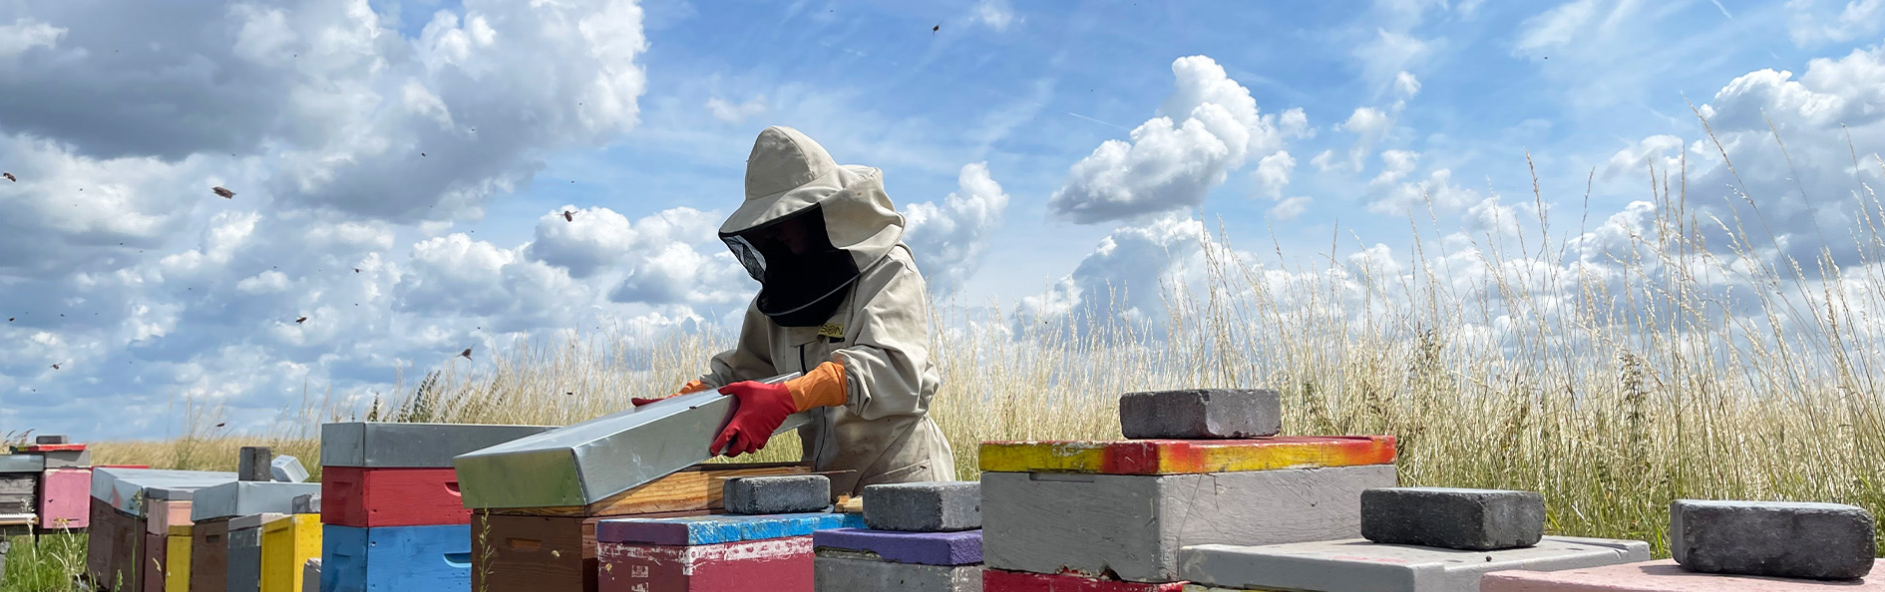 Homem trabalha no campo com abelhas